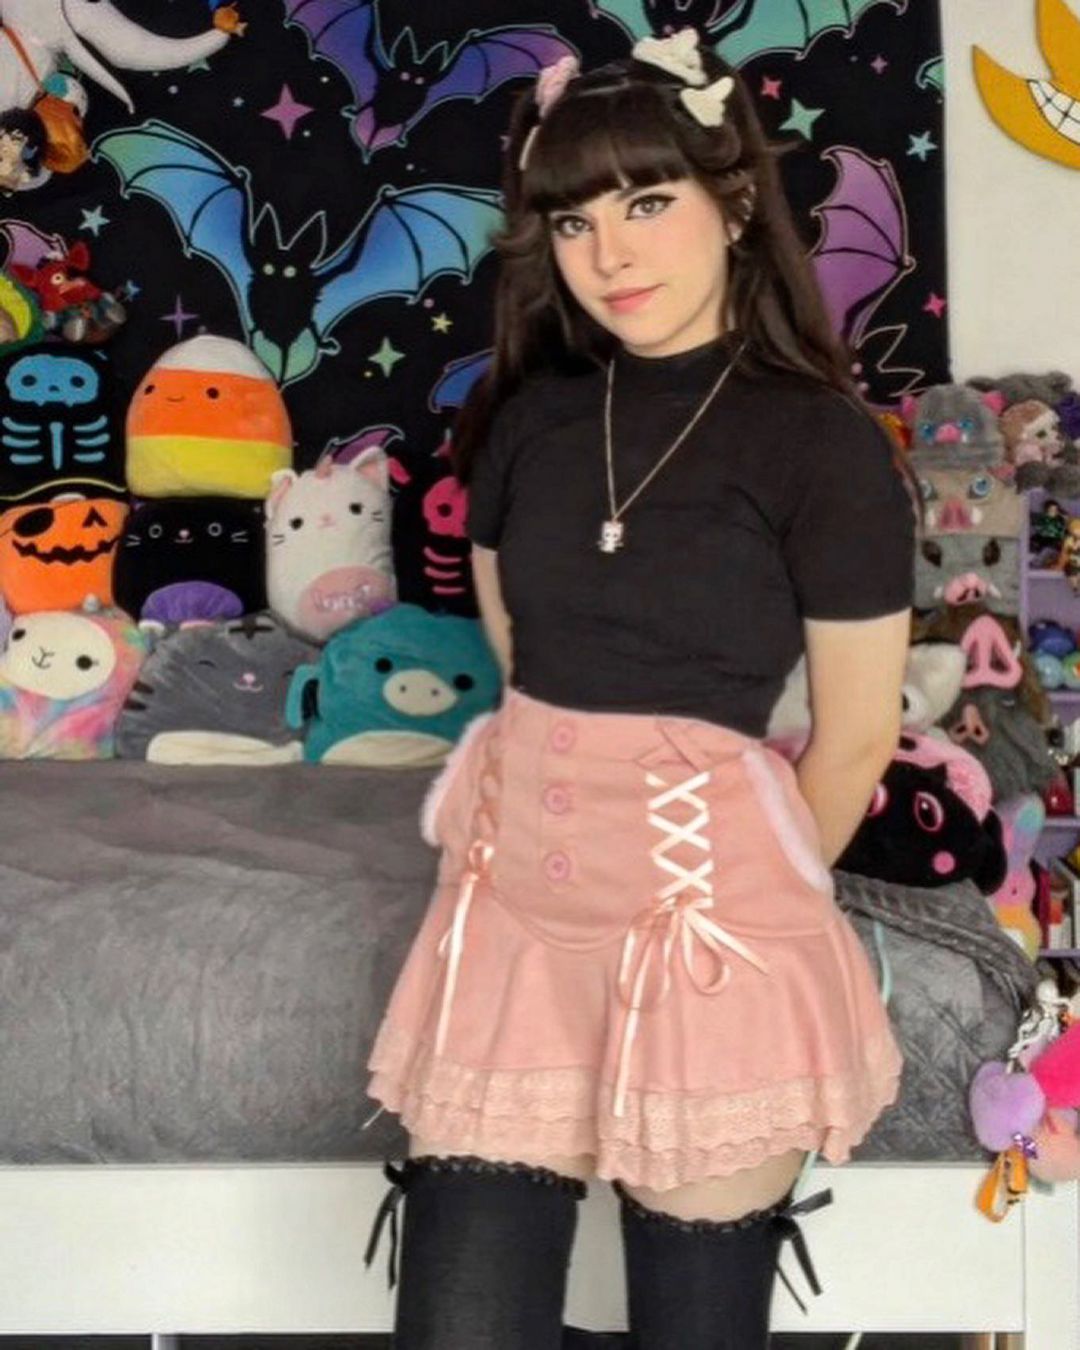 Pink High Waist Skirt UB96059